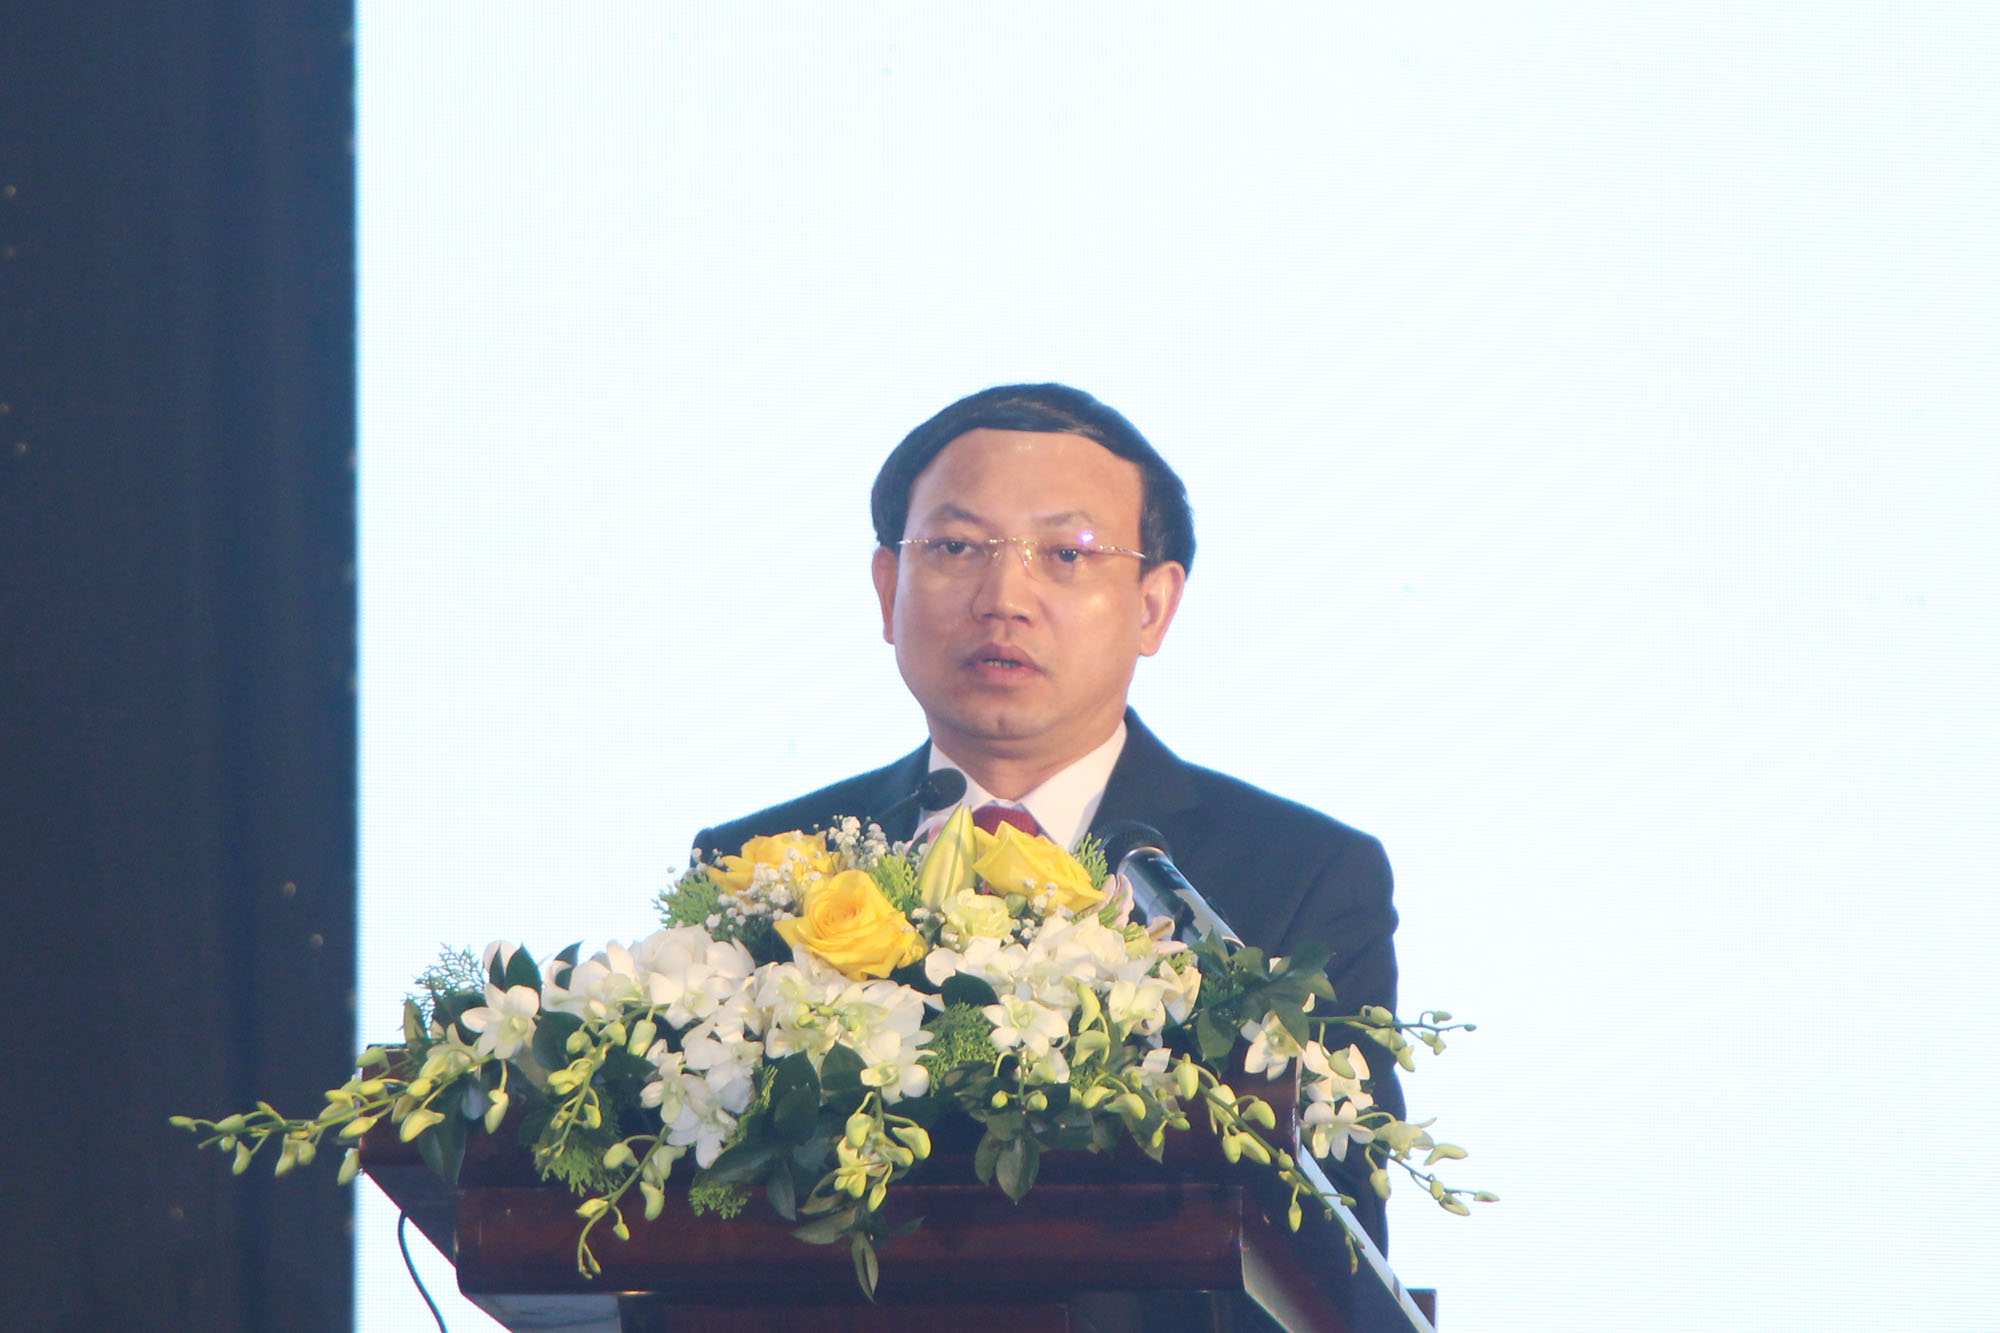 Đồng chí Nguyễn Xuân Ký, Bí thư Tỉnh ủy, Chủ tịch HĐND tỉnh, phát biểu khai mạc hội nghị.